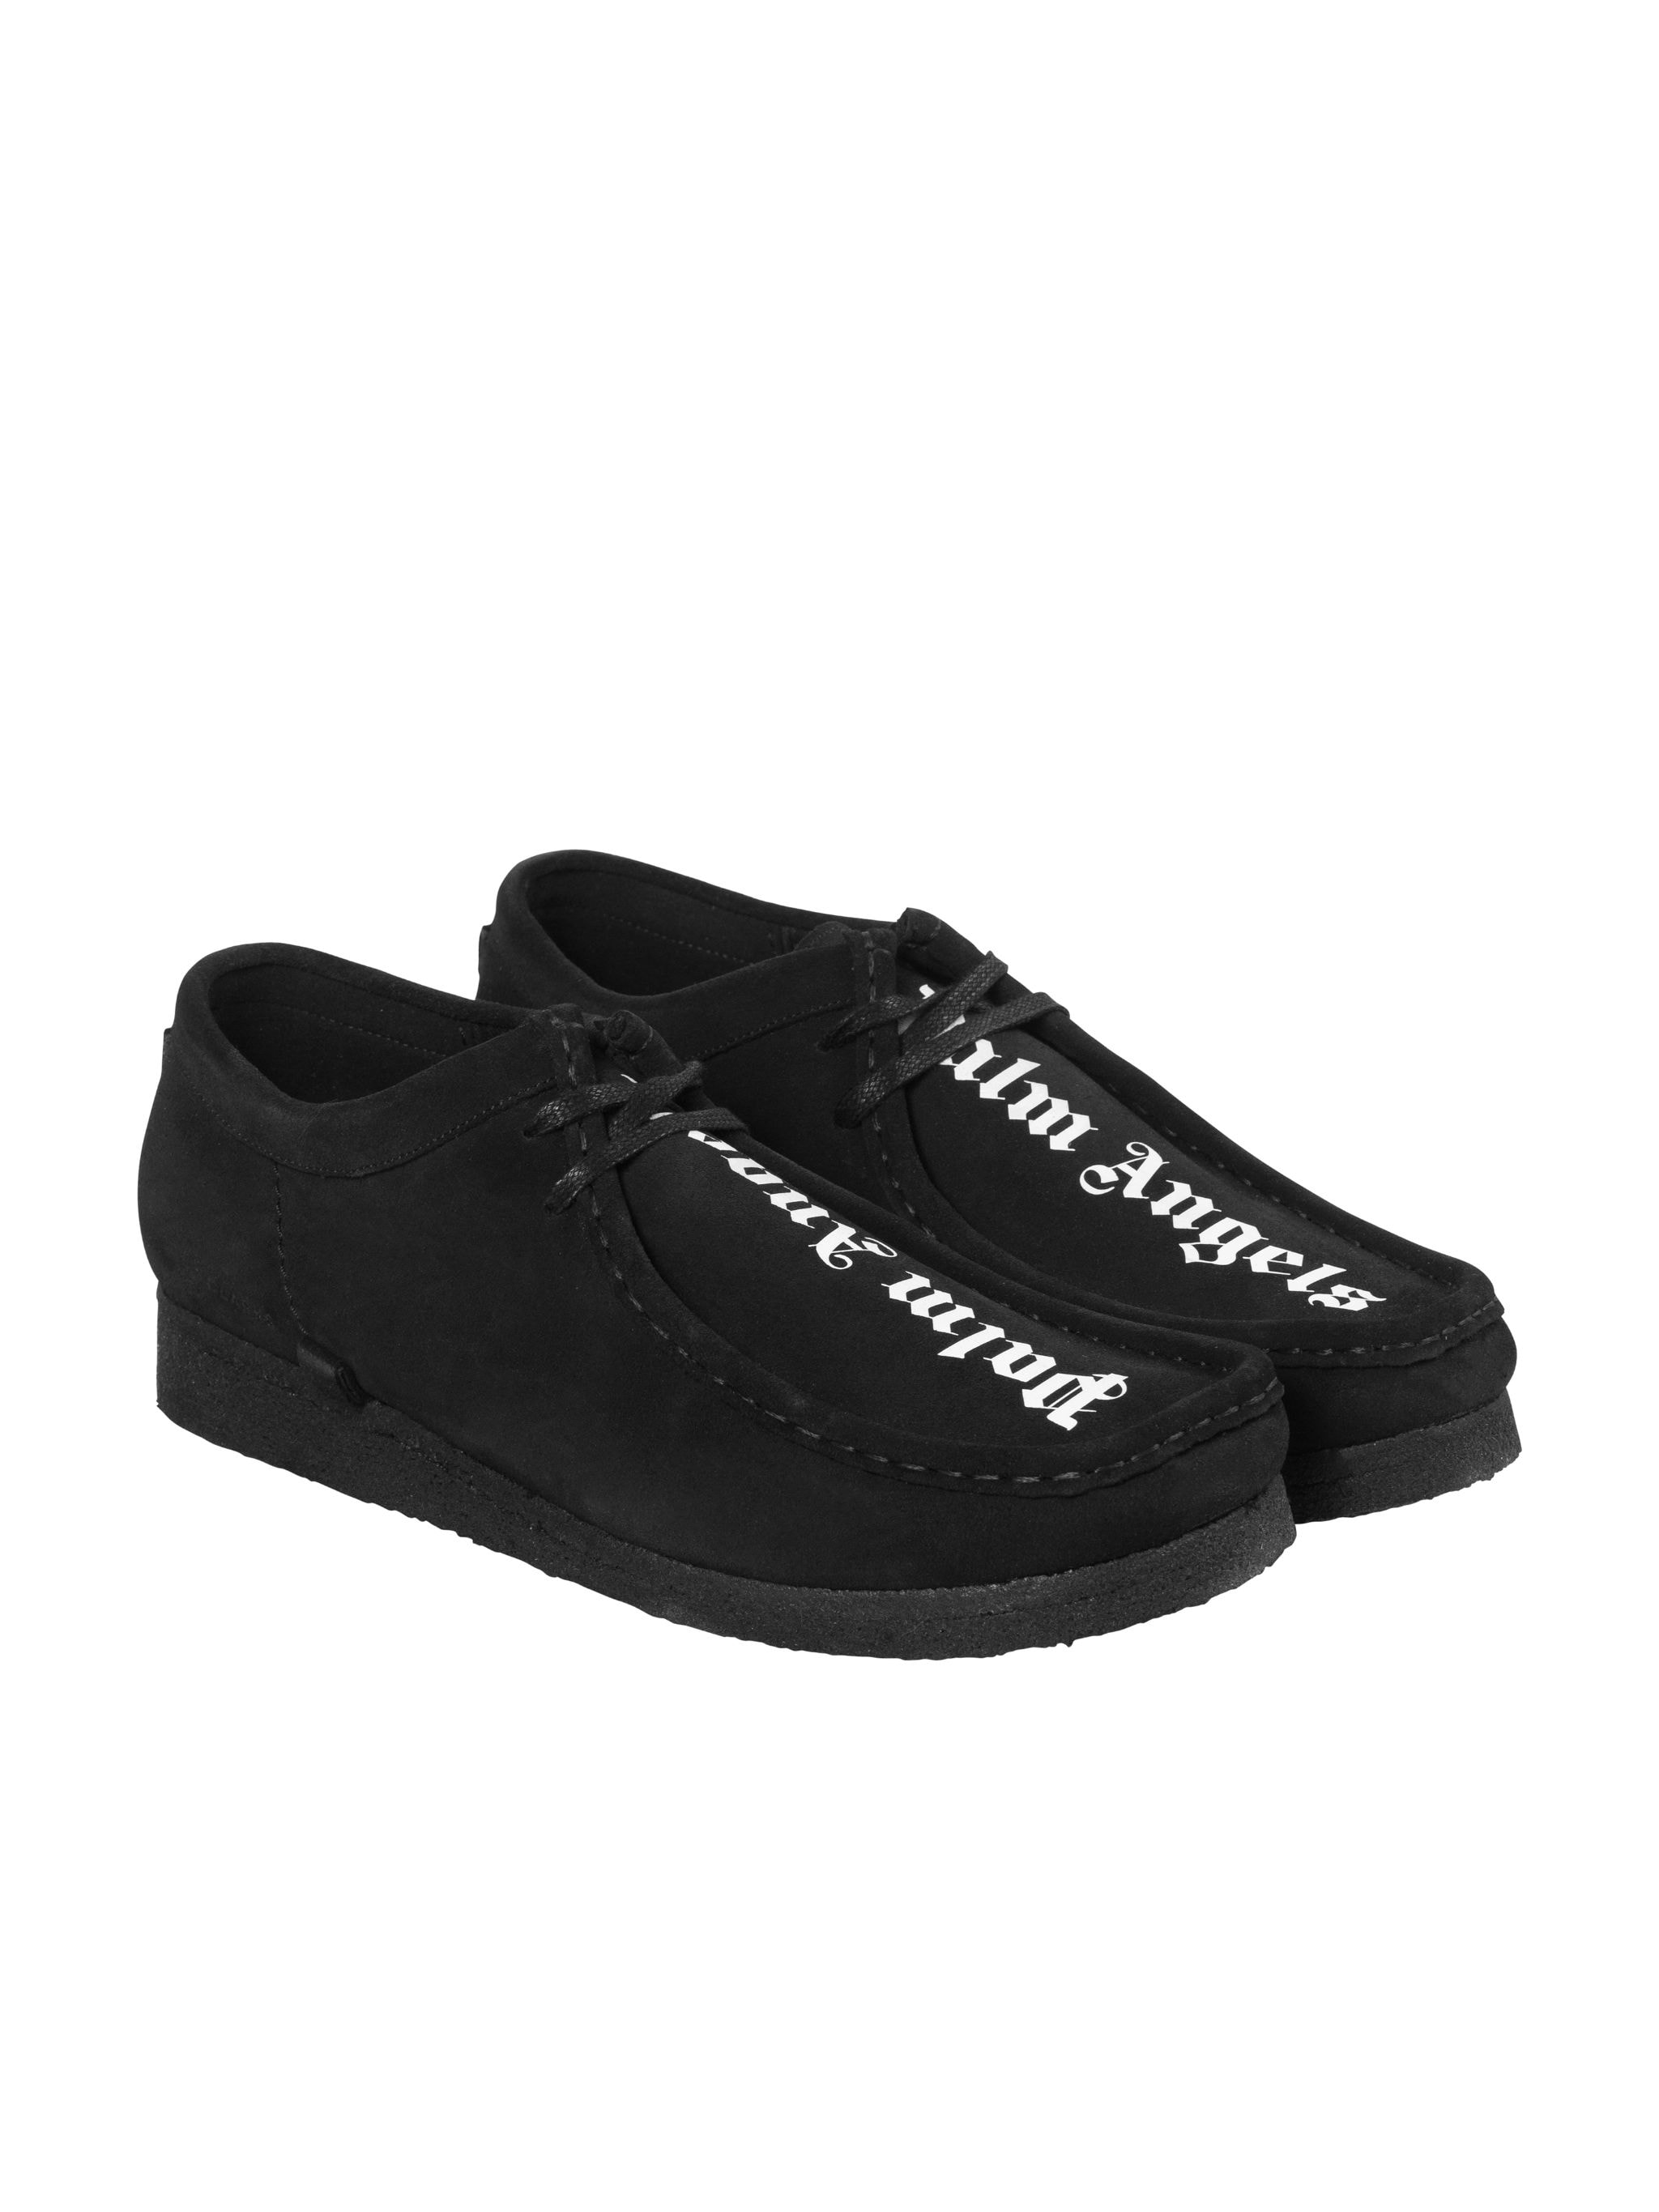 black palm shoes